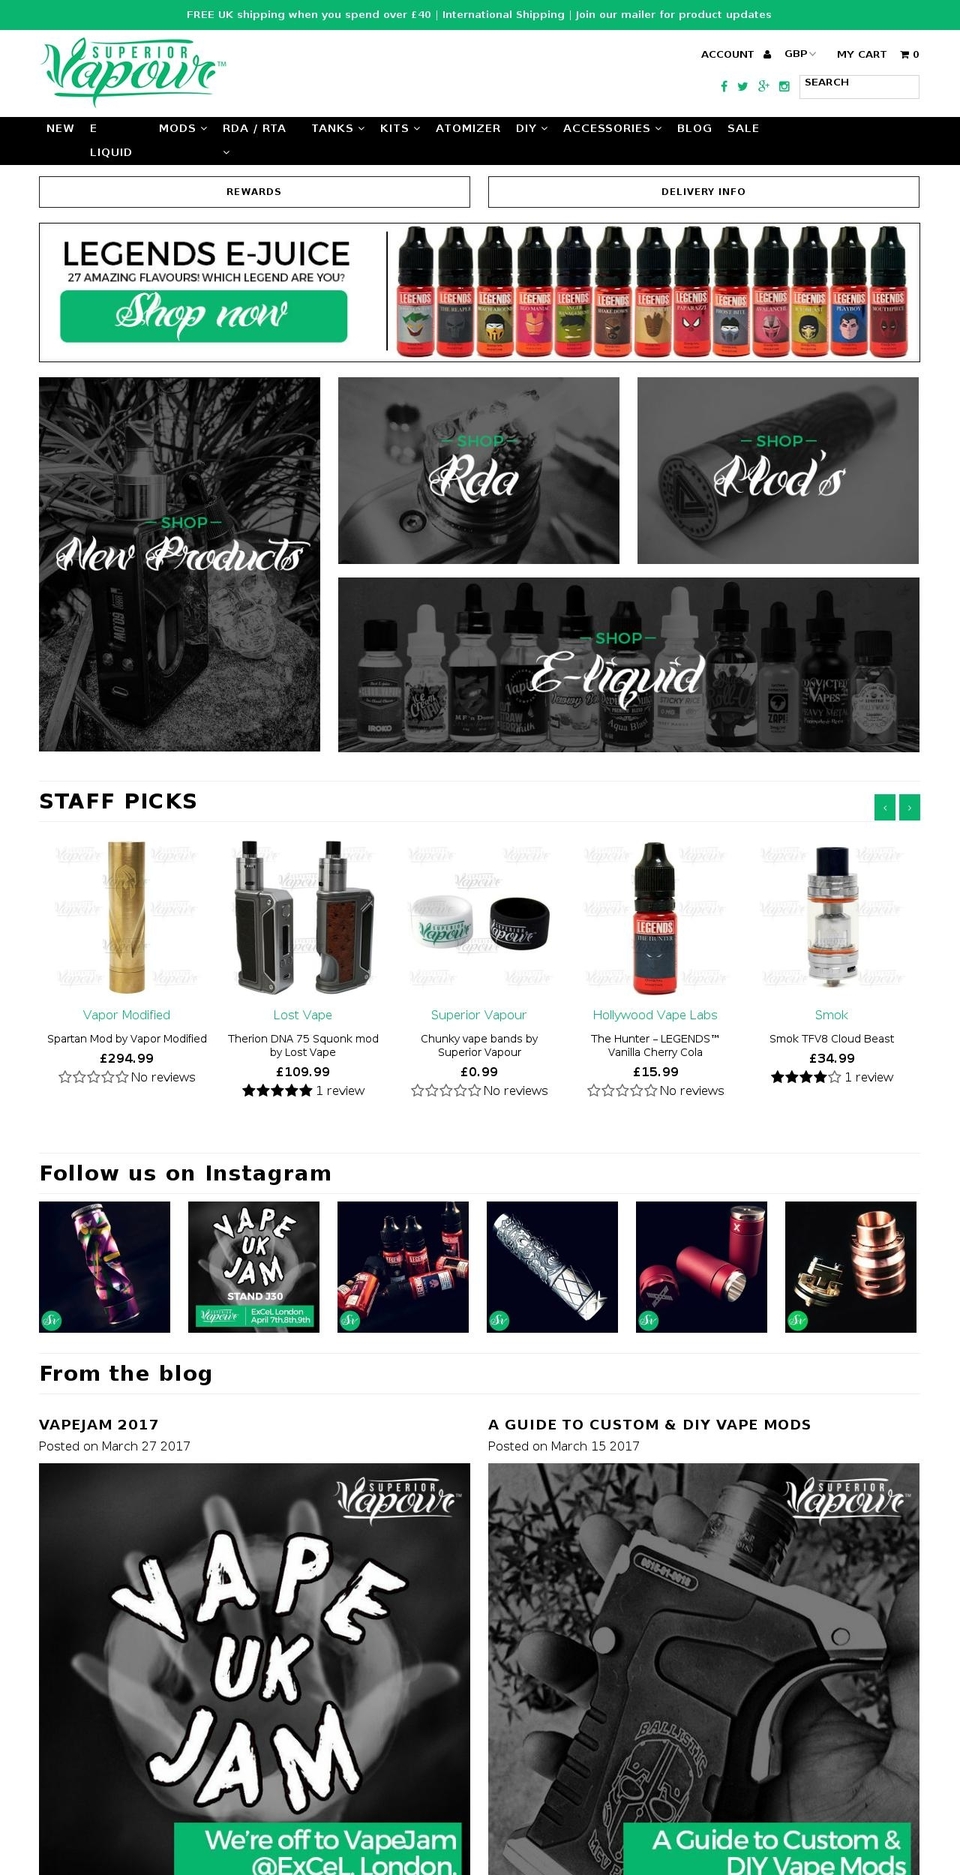 superiorvapour.com shopify website screenshot